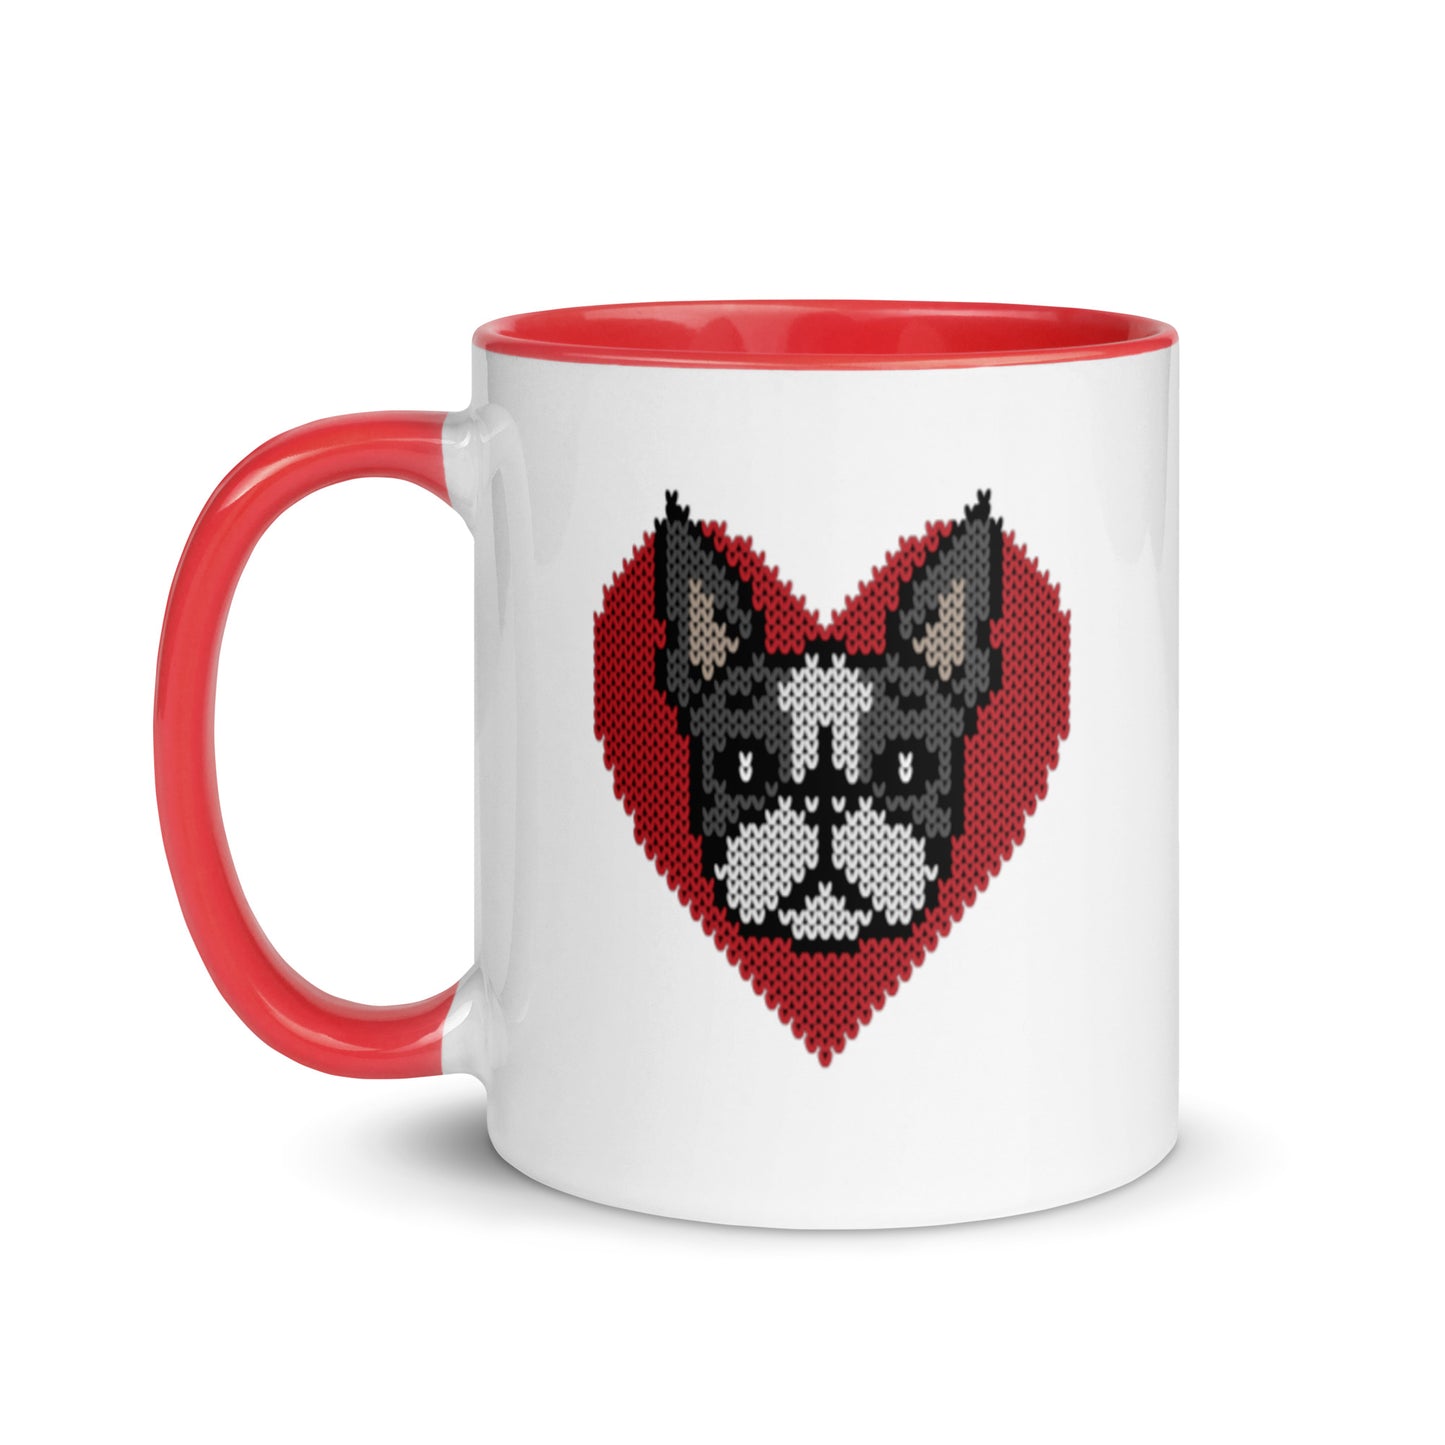 SWEETIE Mug Boston Terrier